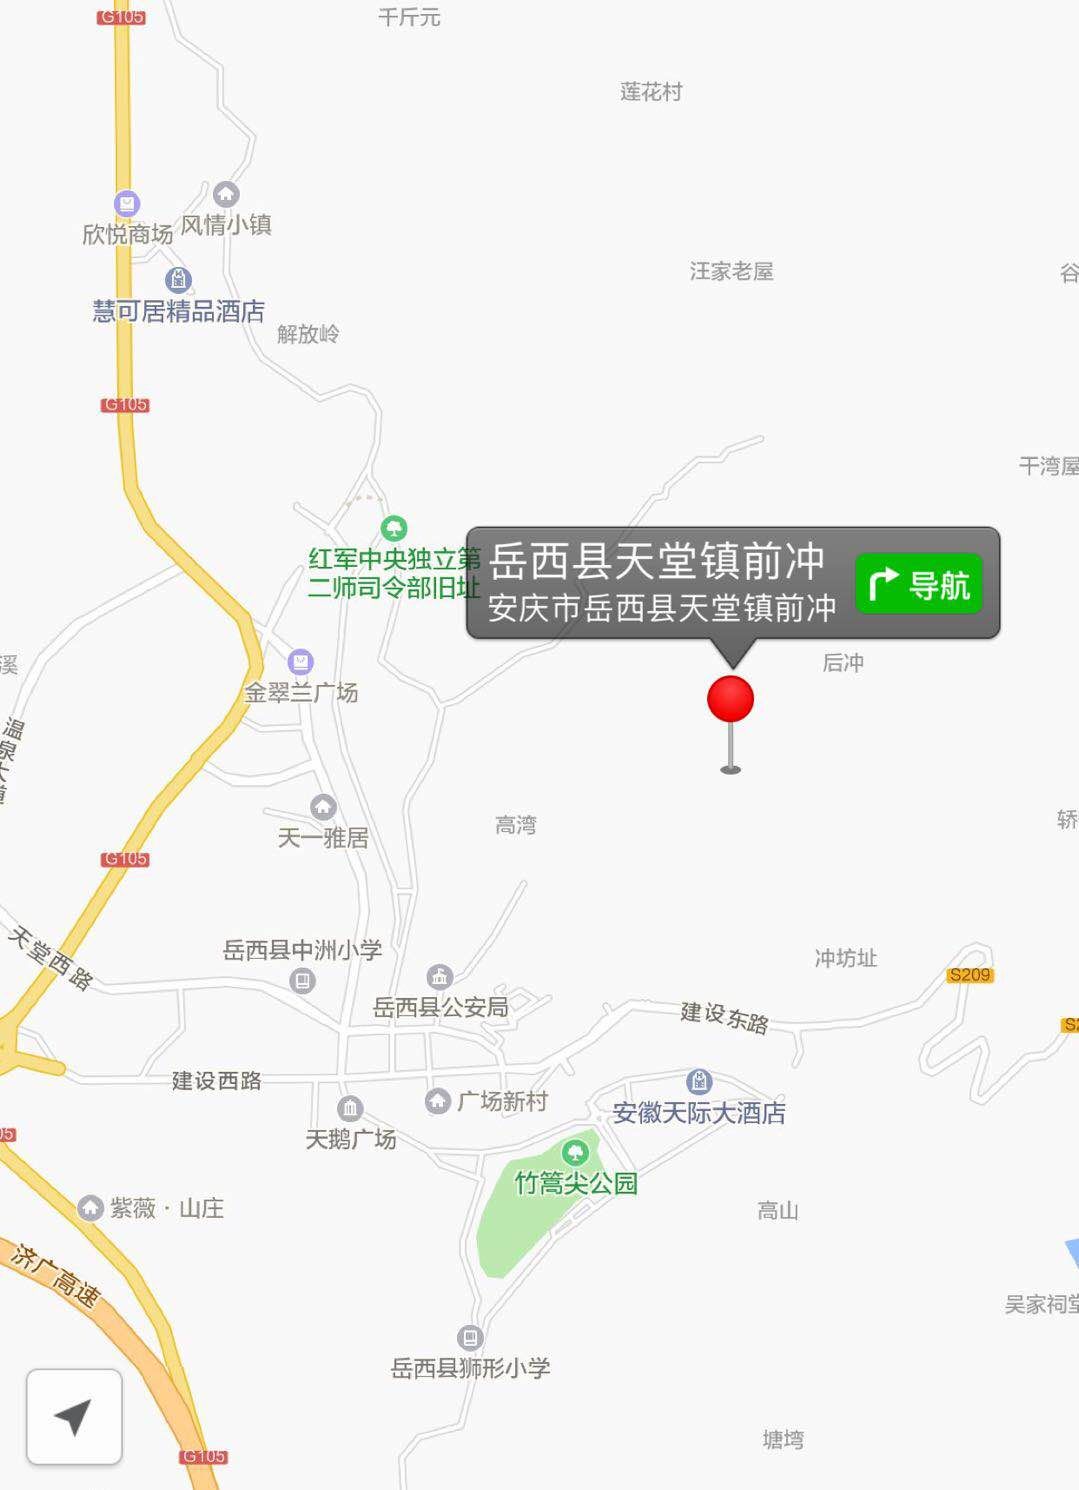 (岳西县看守所实景图) 岳西县看守所位置地图 以上图片